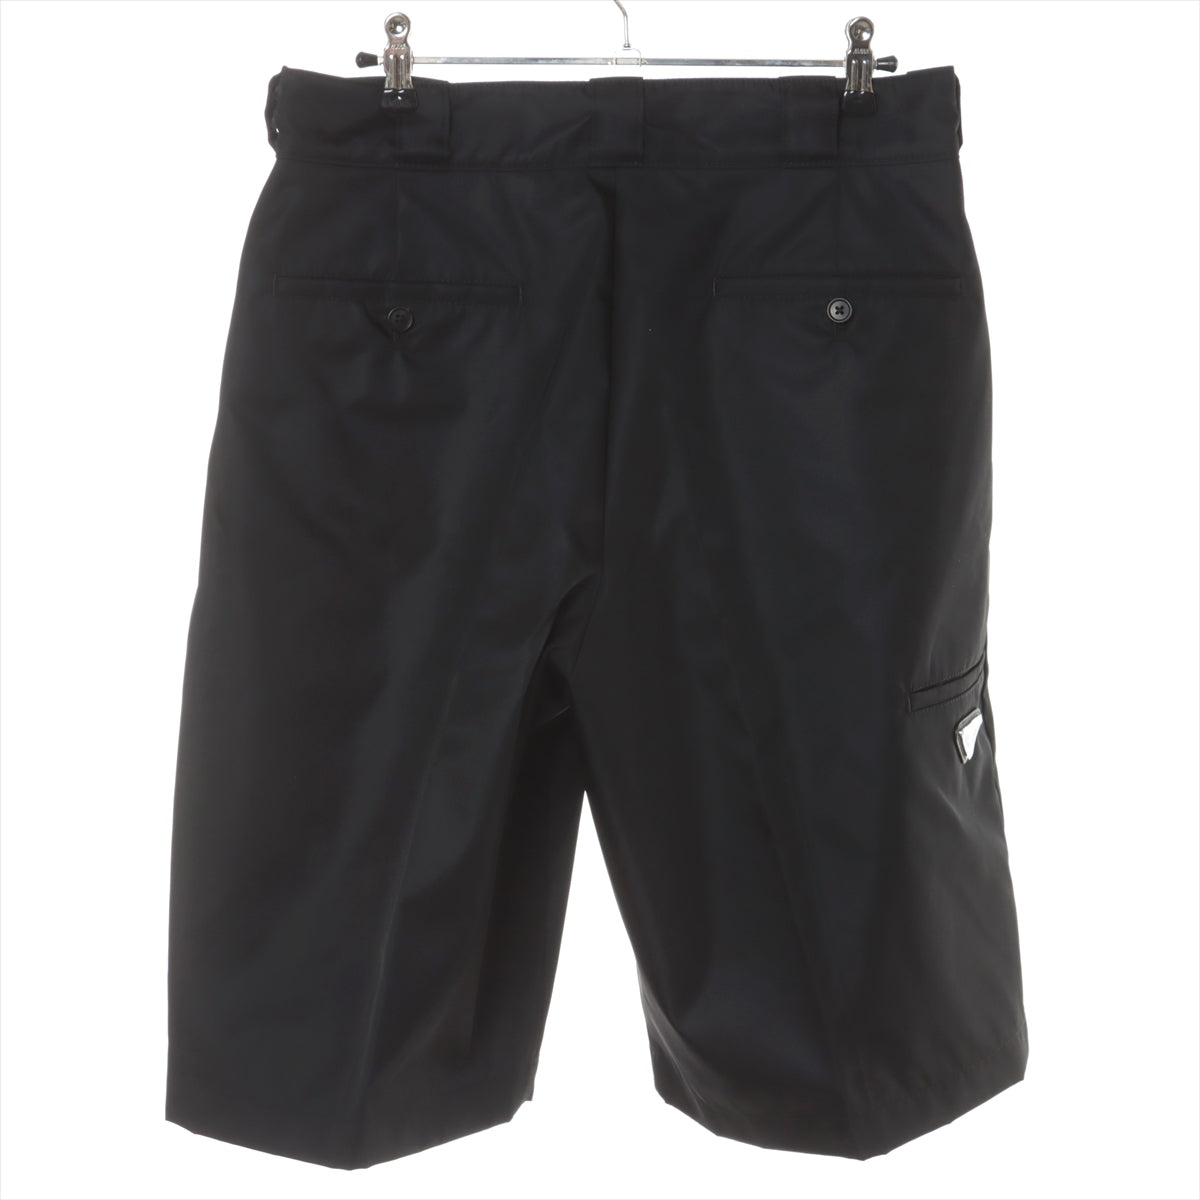 Re-Nylon cargo shorts in black - Prada